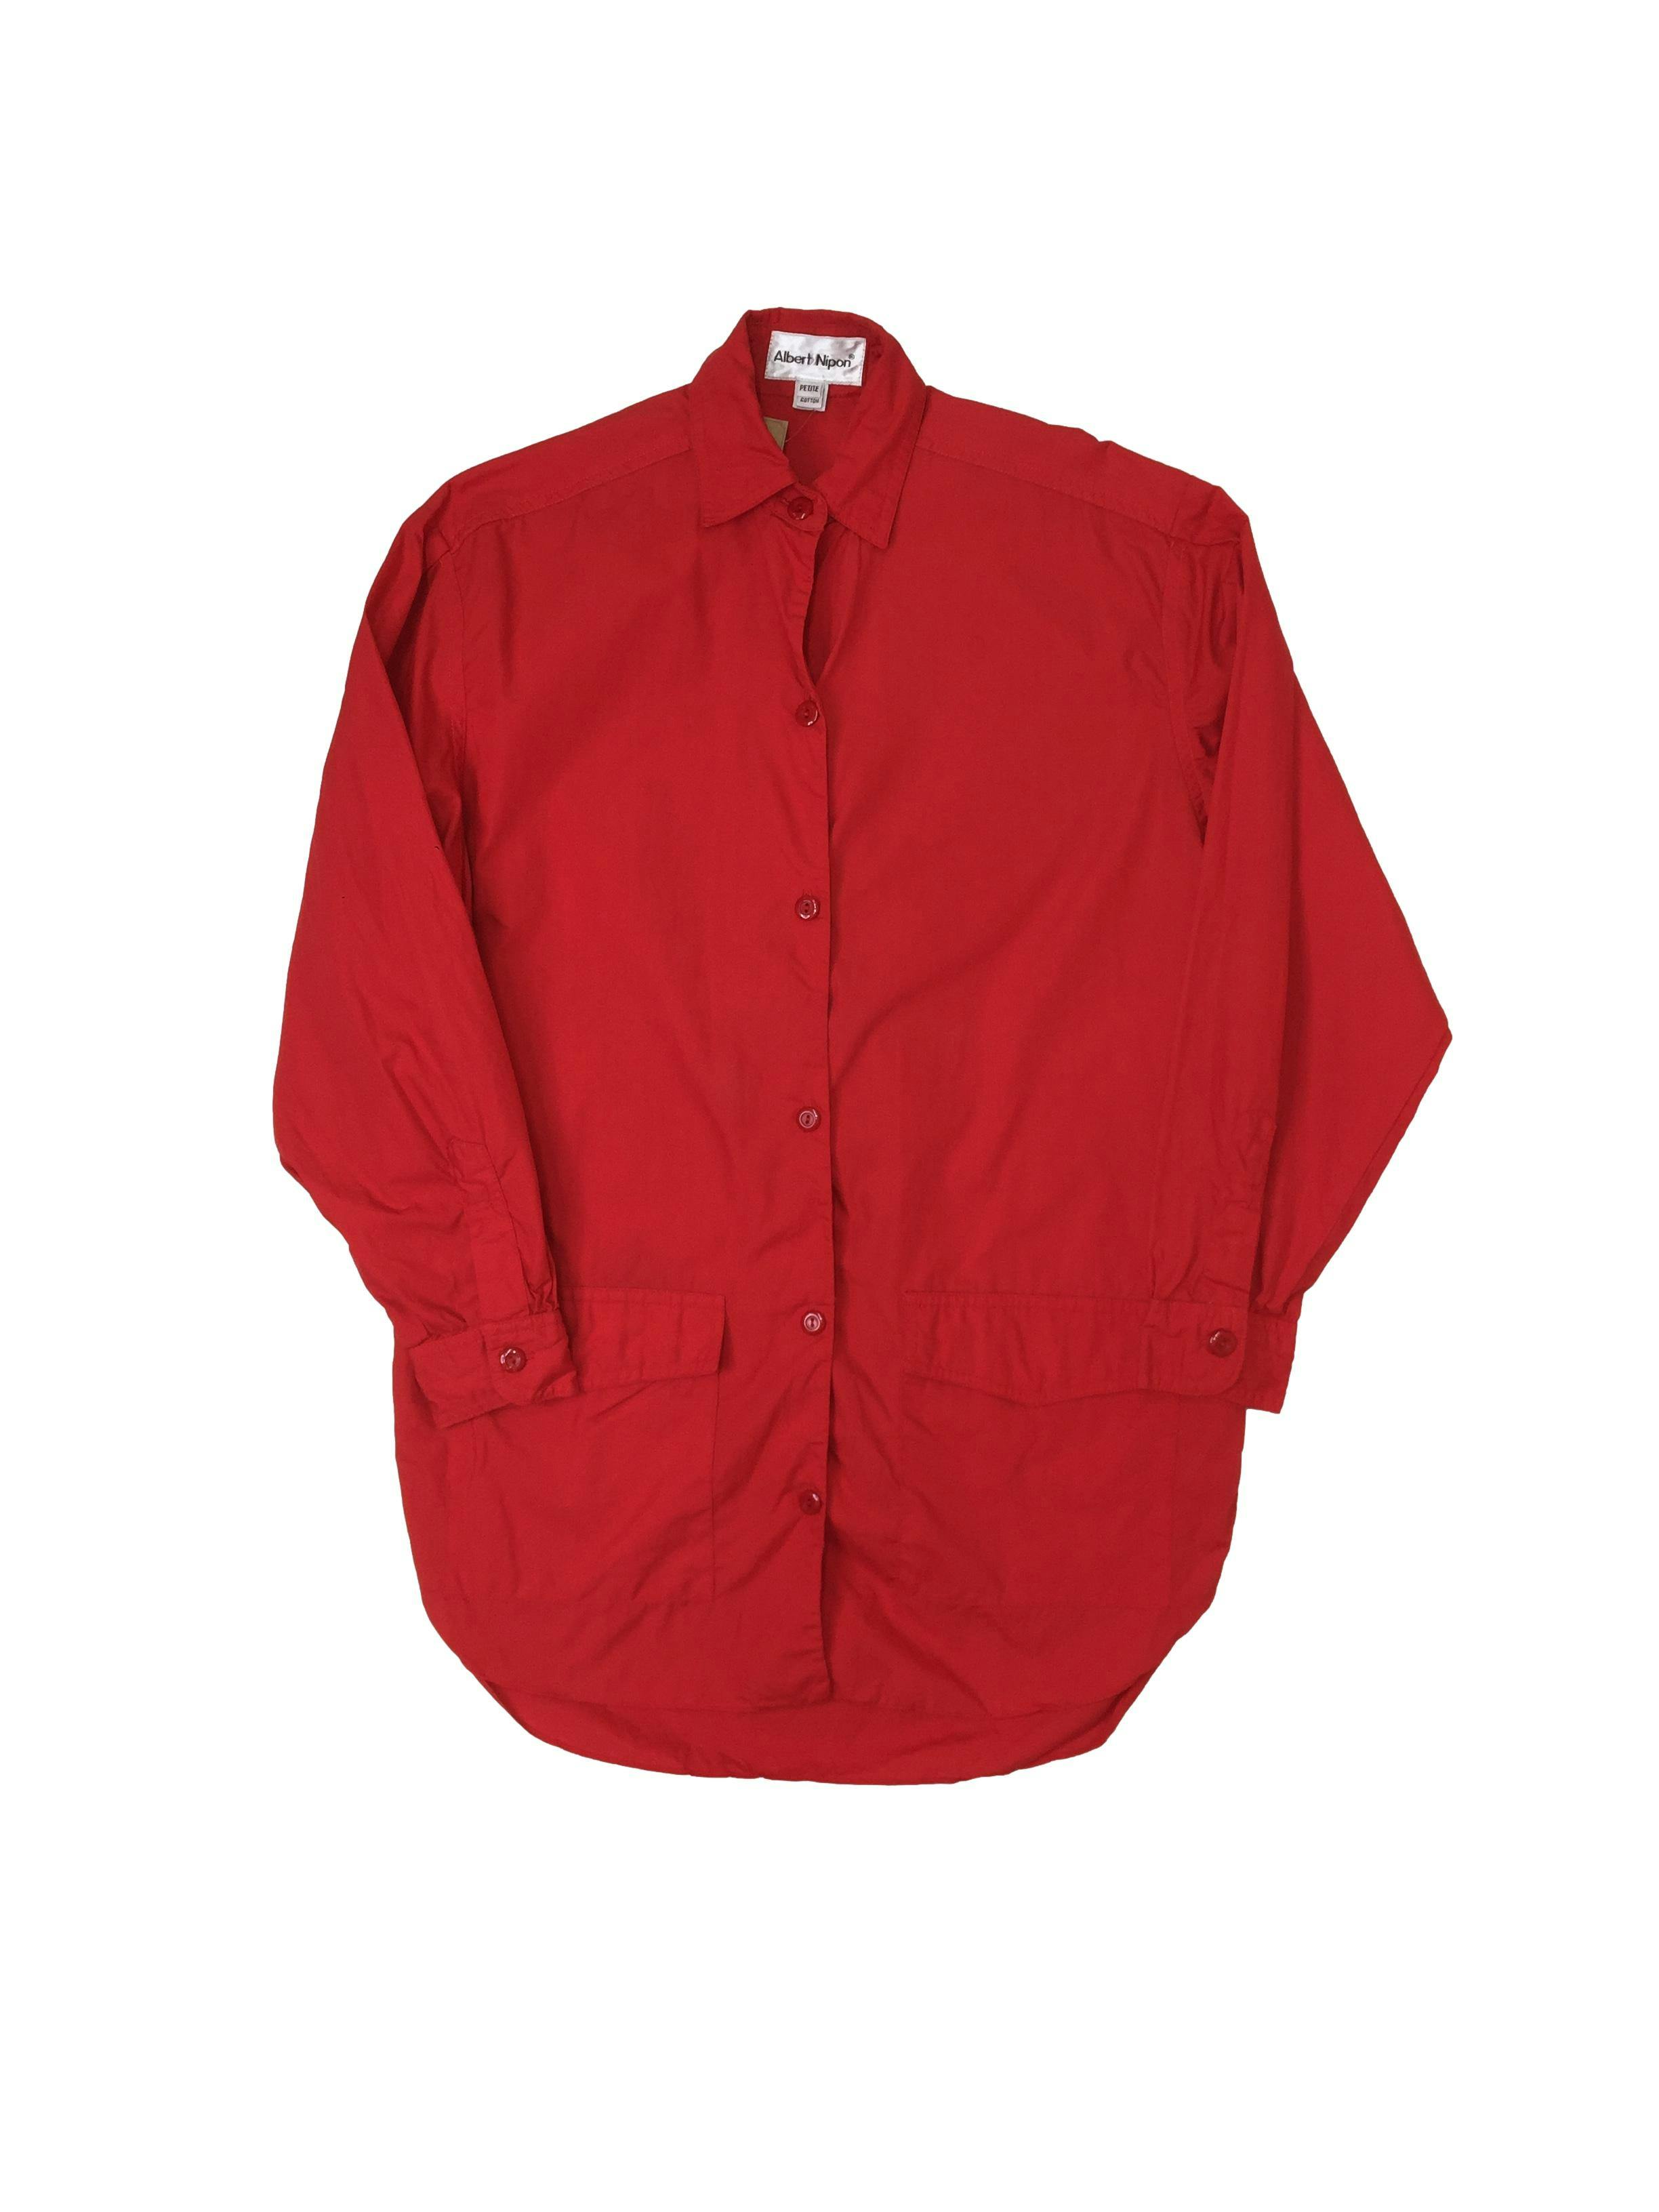 Bluson vintage rojo oversize, 100% algodón, con bolsillos frontales y botones a tono, Largo 78 cm 